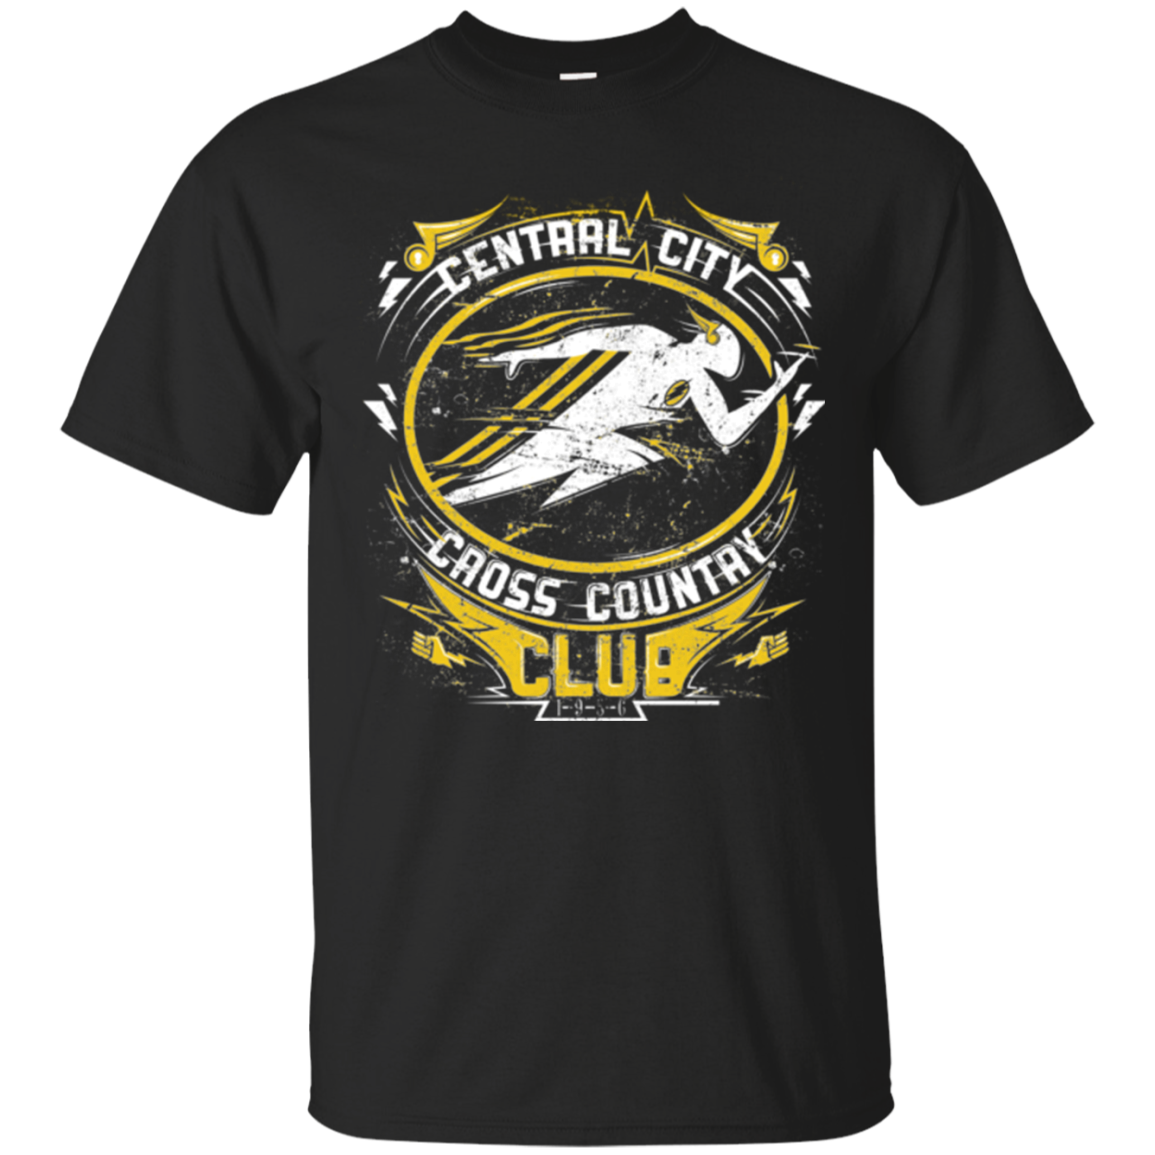 Cross Country Club T-Shirt